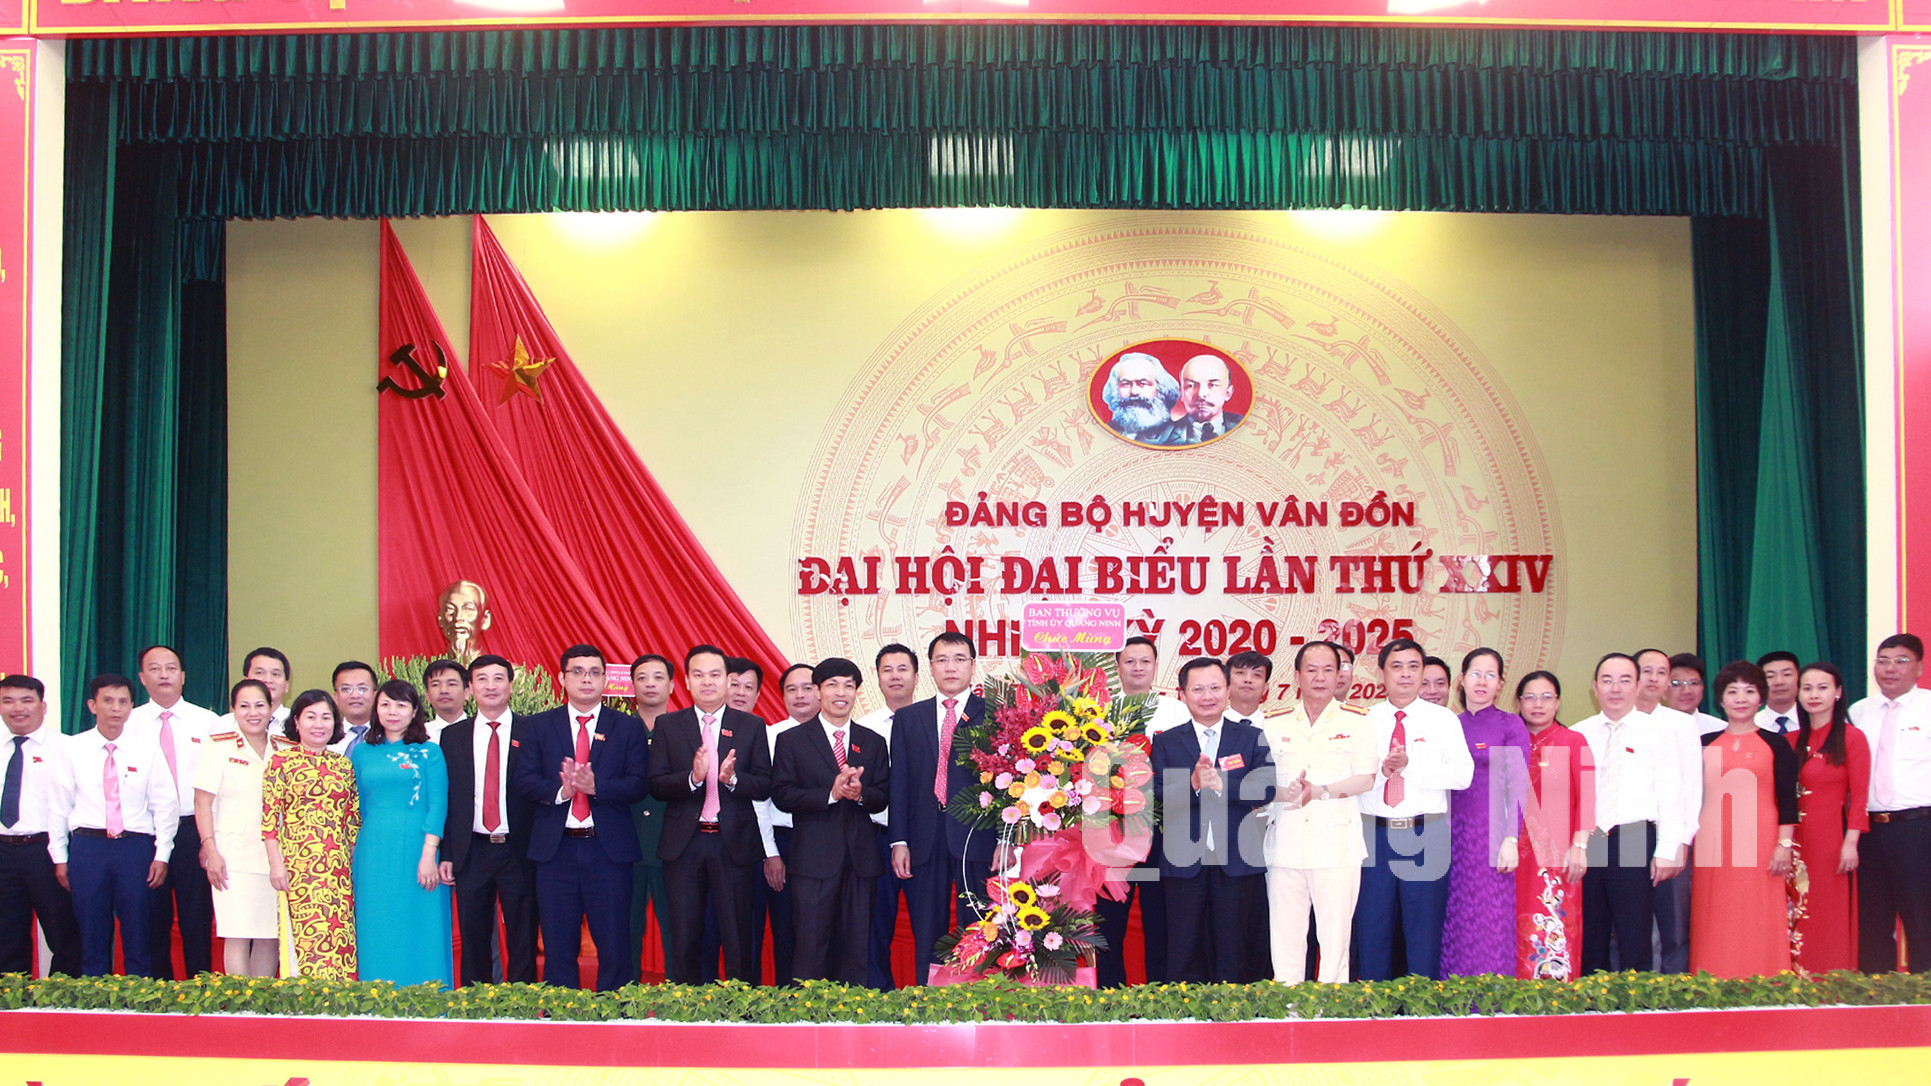 Phó Chủ tịch UBND tỉnh Cao Tường Huy tặng lẵng hoa chúc mừng Ban Chấp hành Đảng bộ huyện Vân Đồn lần thứ XXIV, nhiệm kỳ 2020-2025 (7-2020). Ảnh: Mạnh Trường